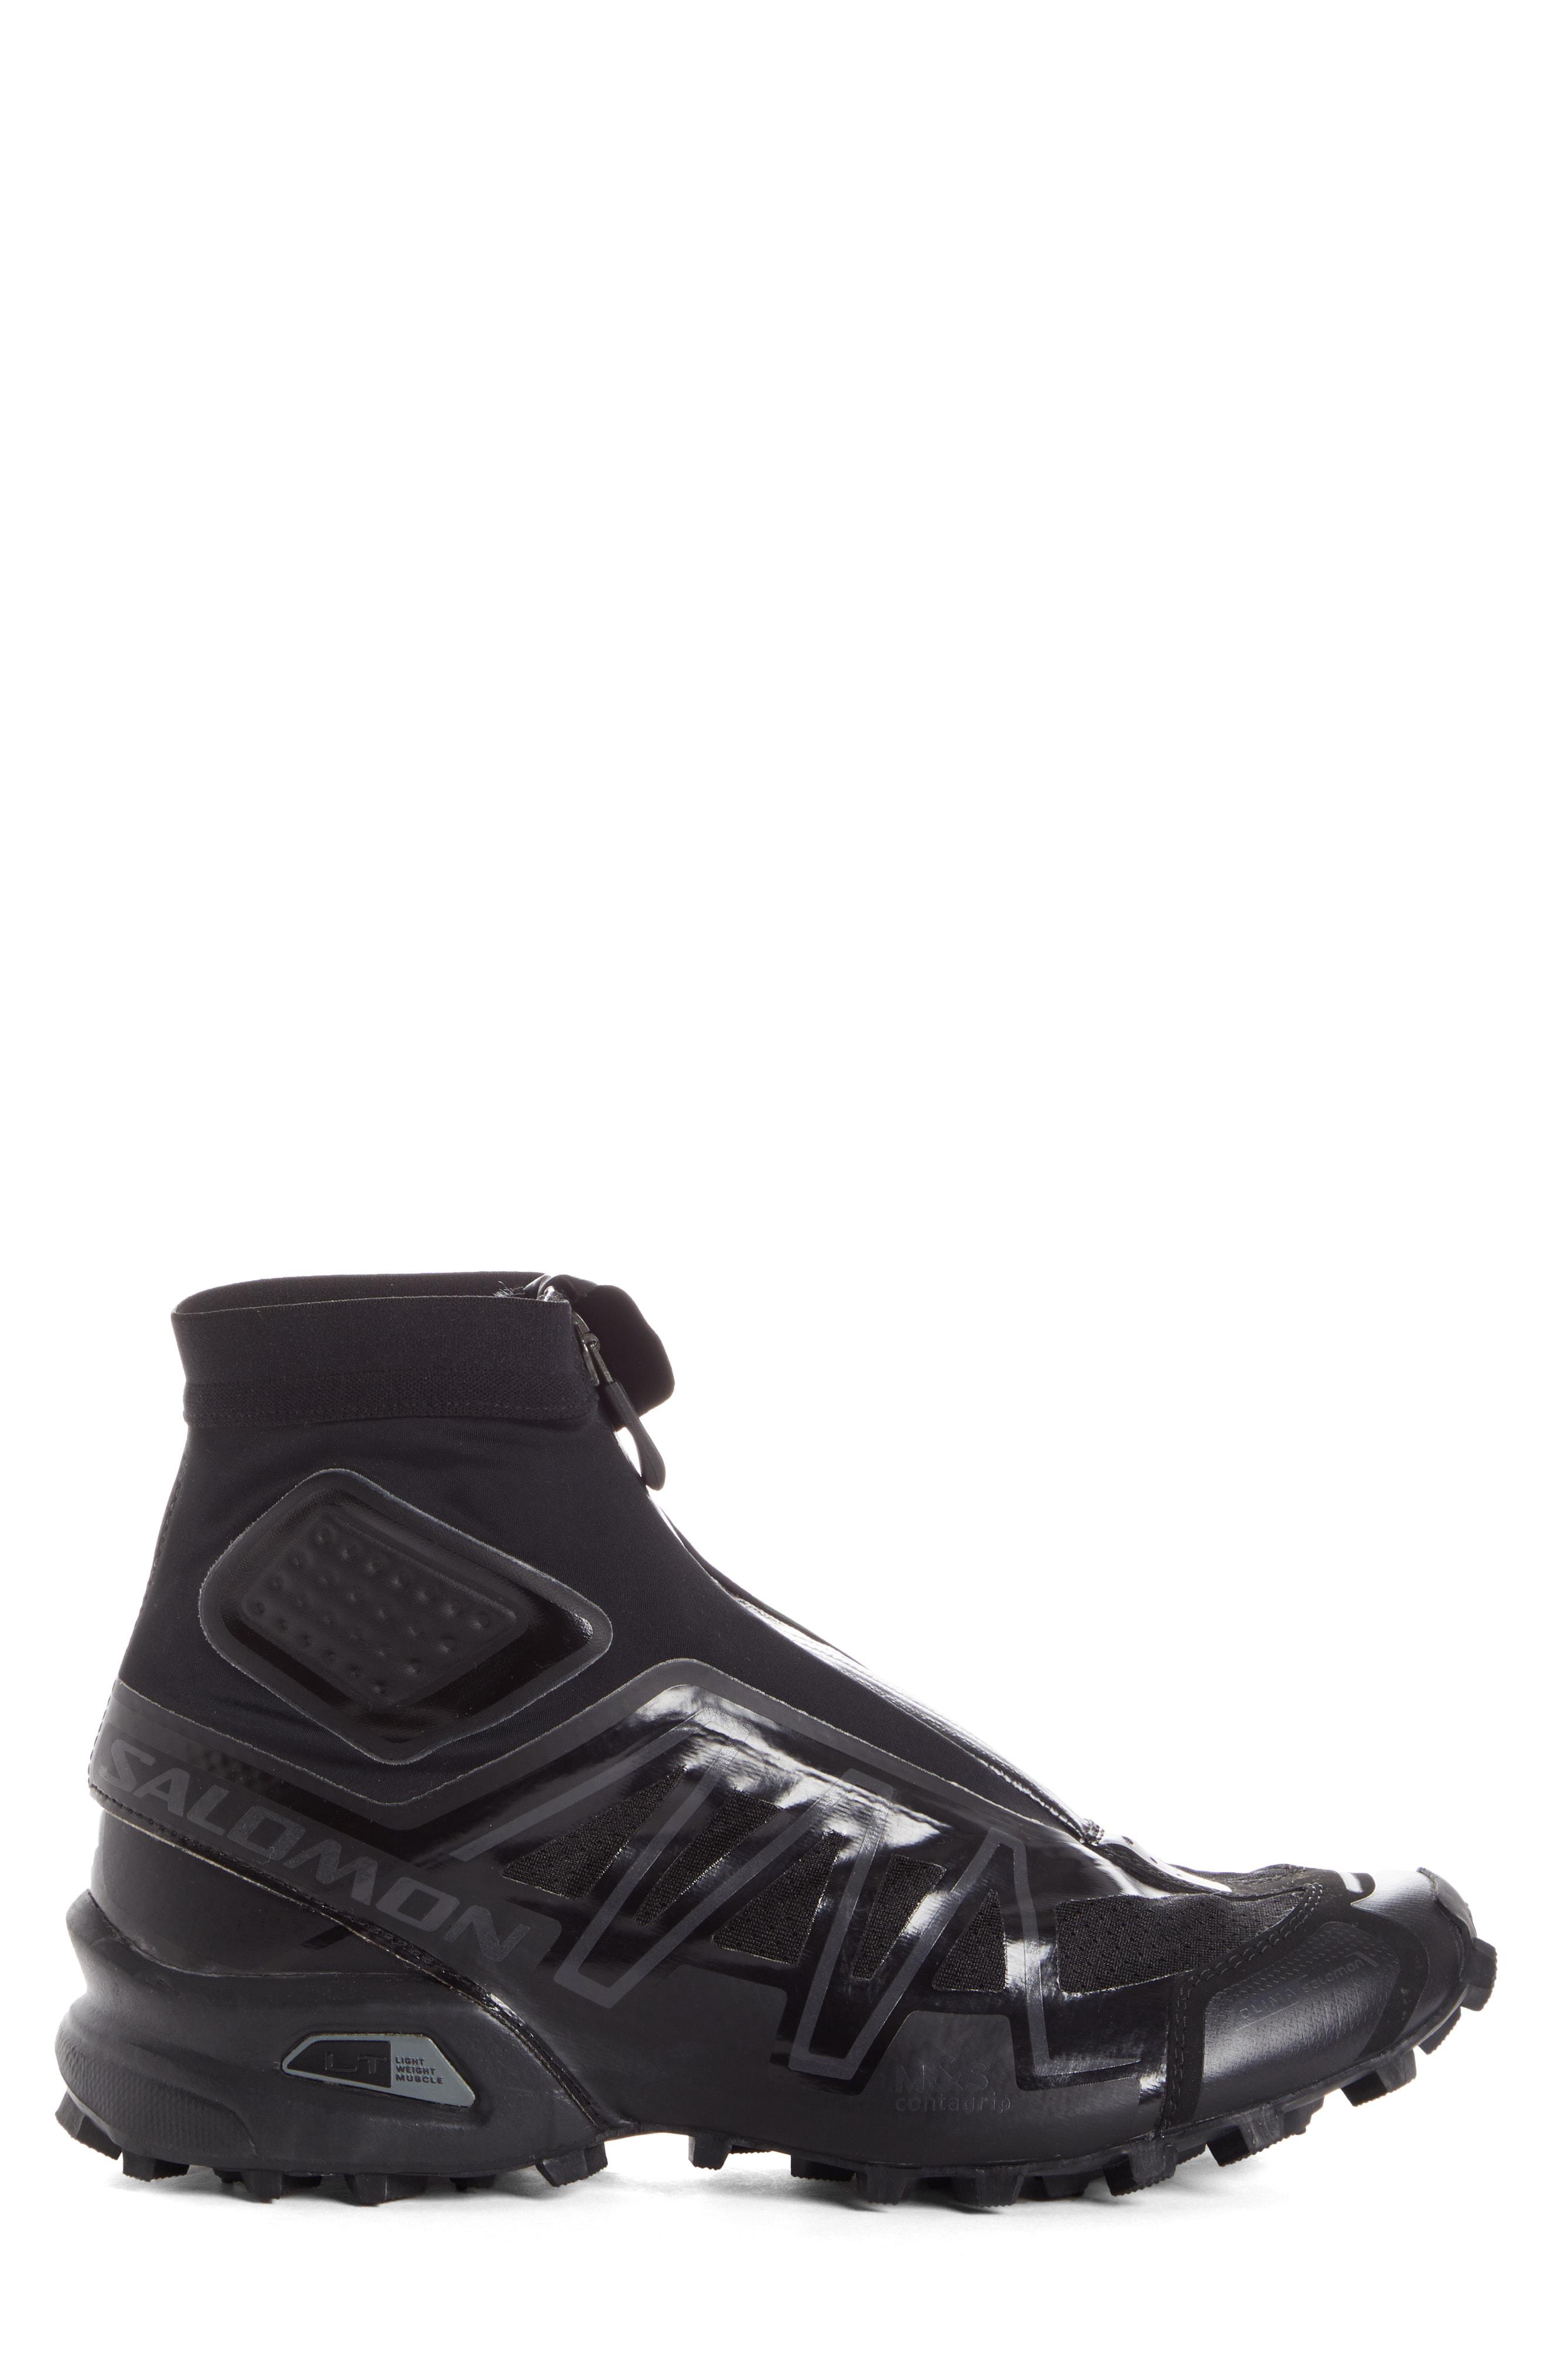 salomon black snowcross adv ltd sneakers buy clothes shoes online